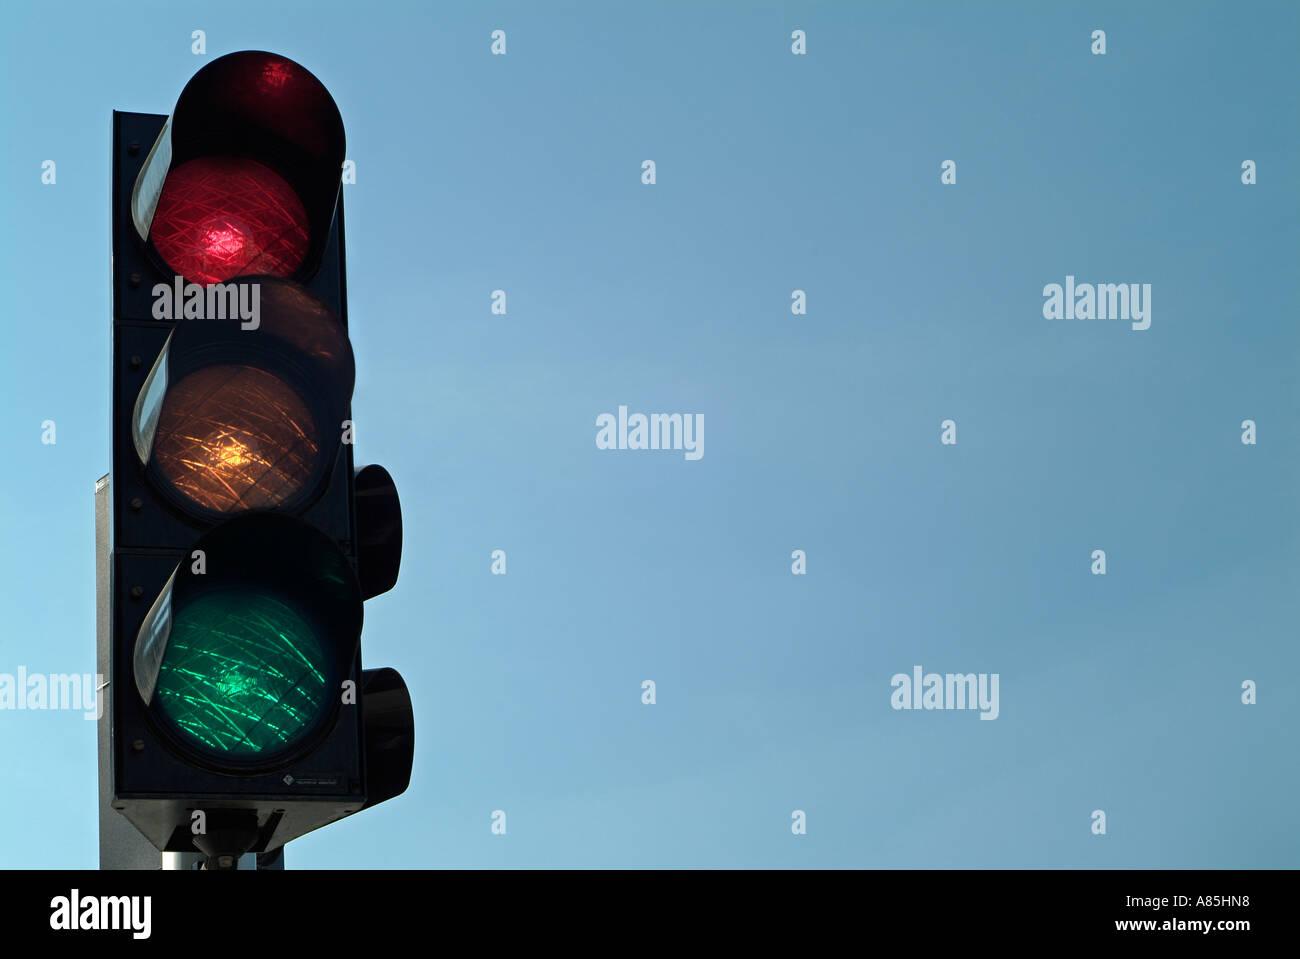 Feu de circulation confus montrant le signal rouge orange et vert s'allume en même temps Banque D'Images